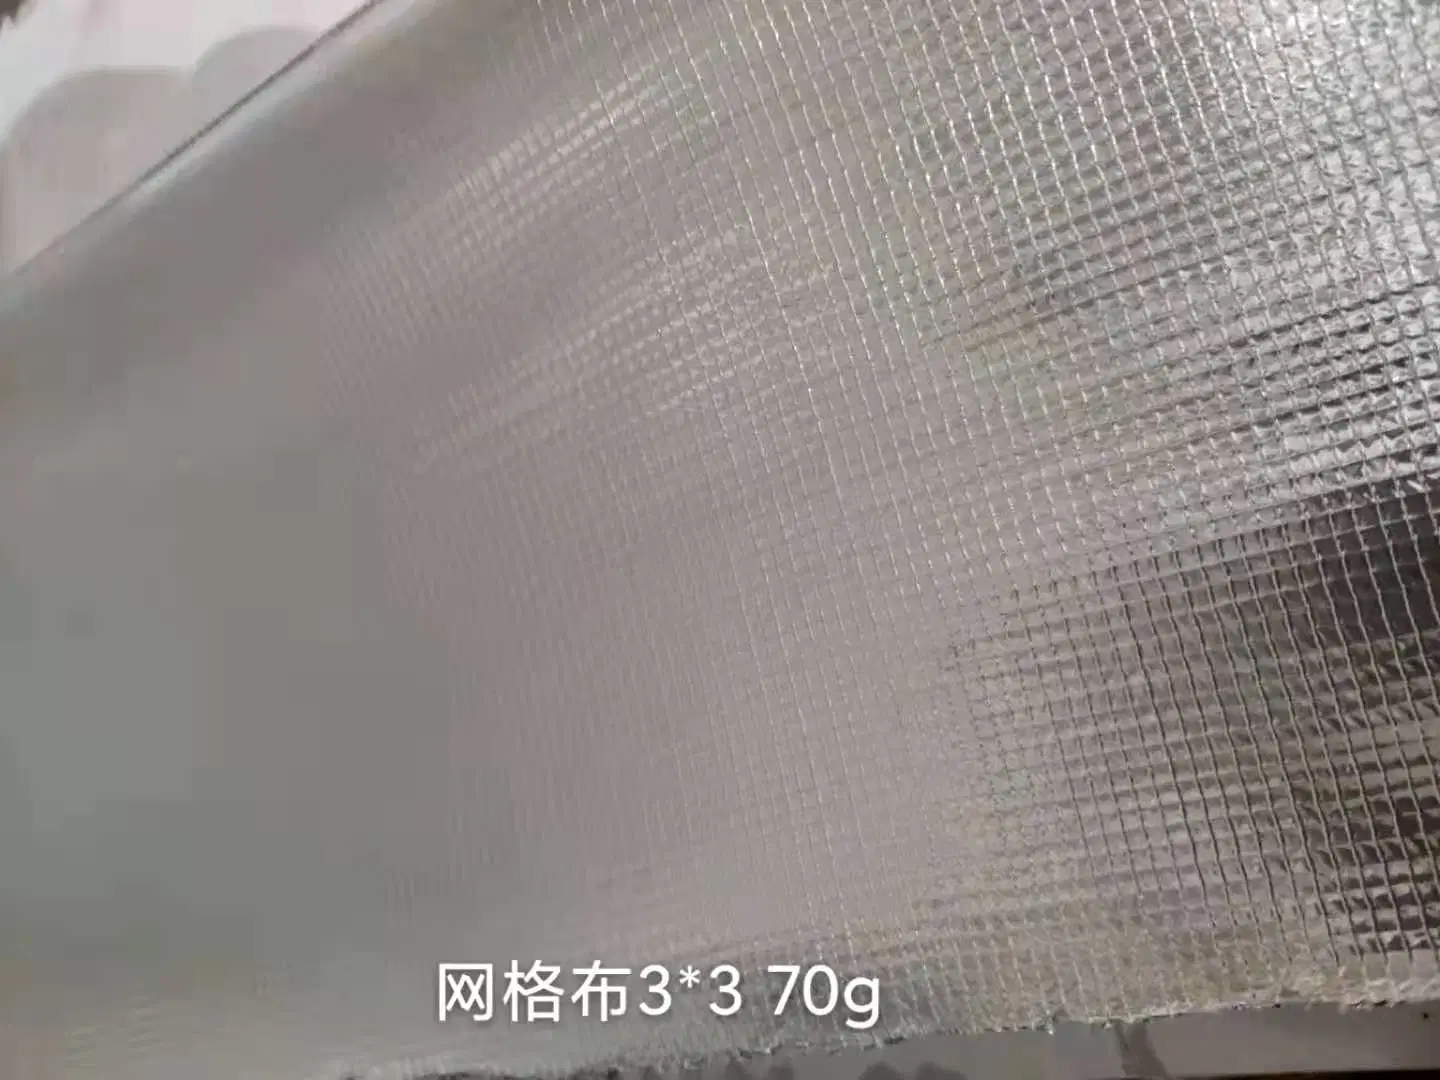 Isolamento térmico com revestimento de alumínio pano de fibra de vidro